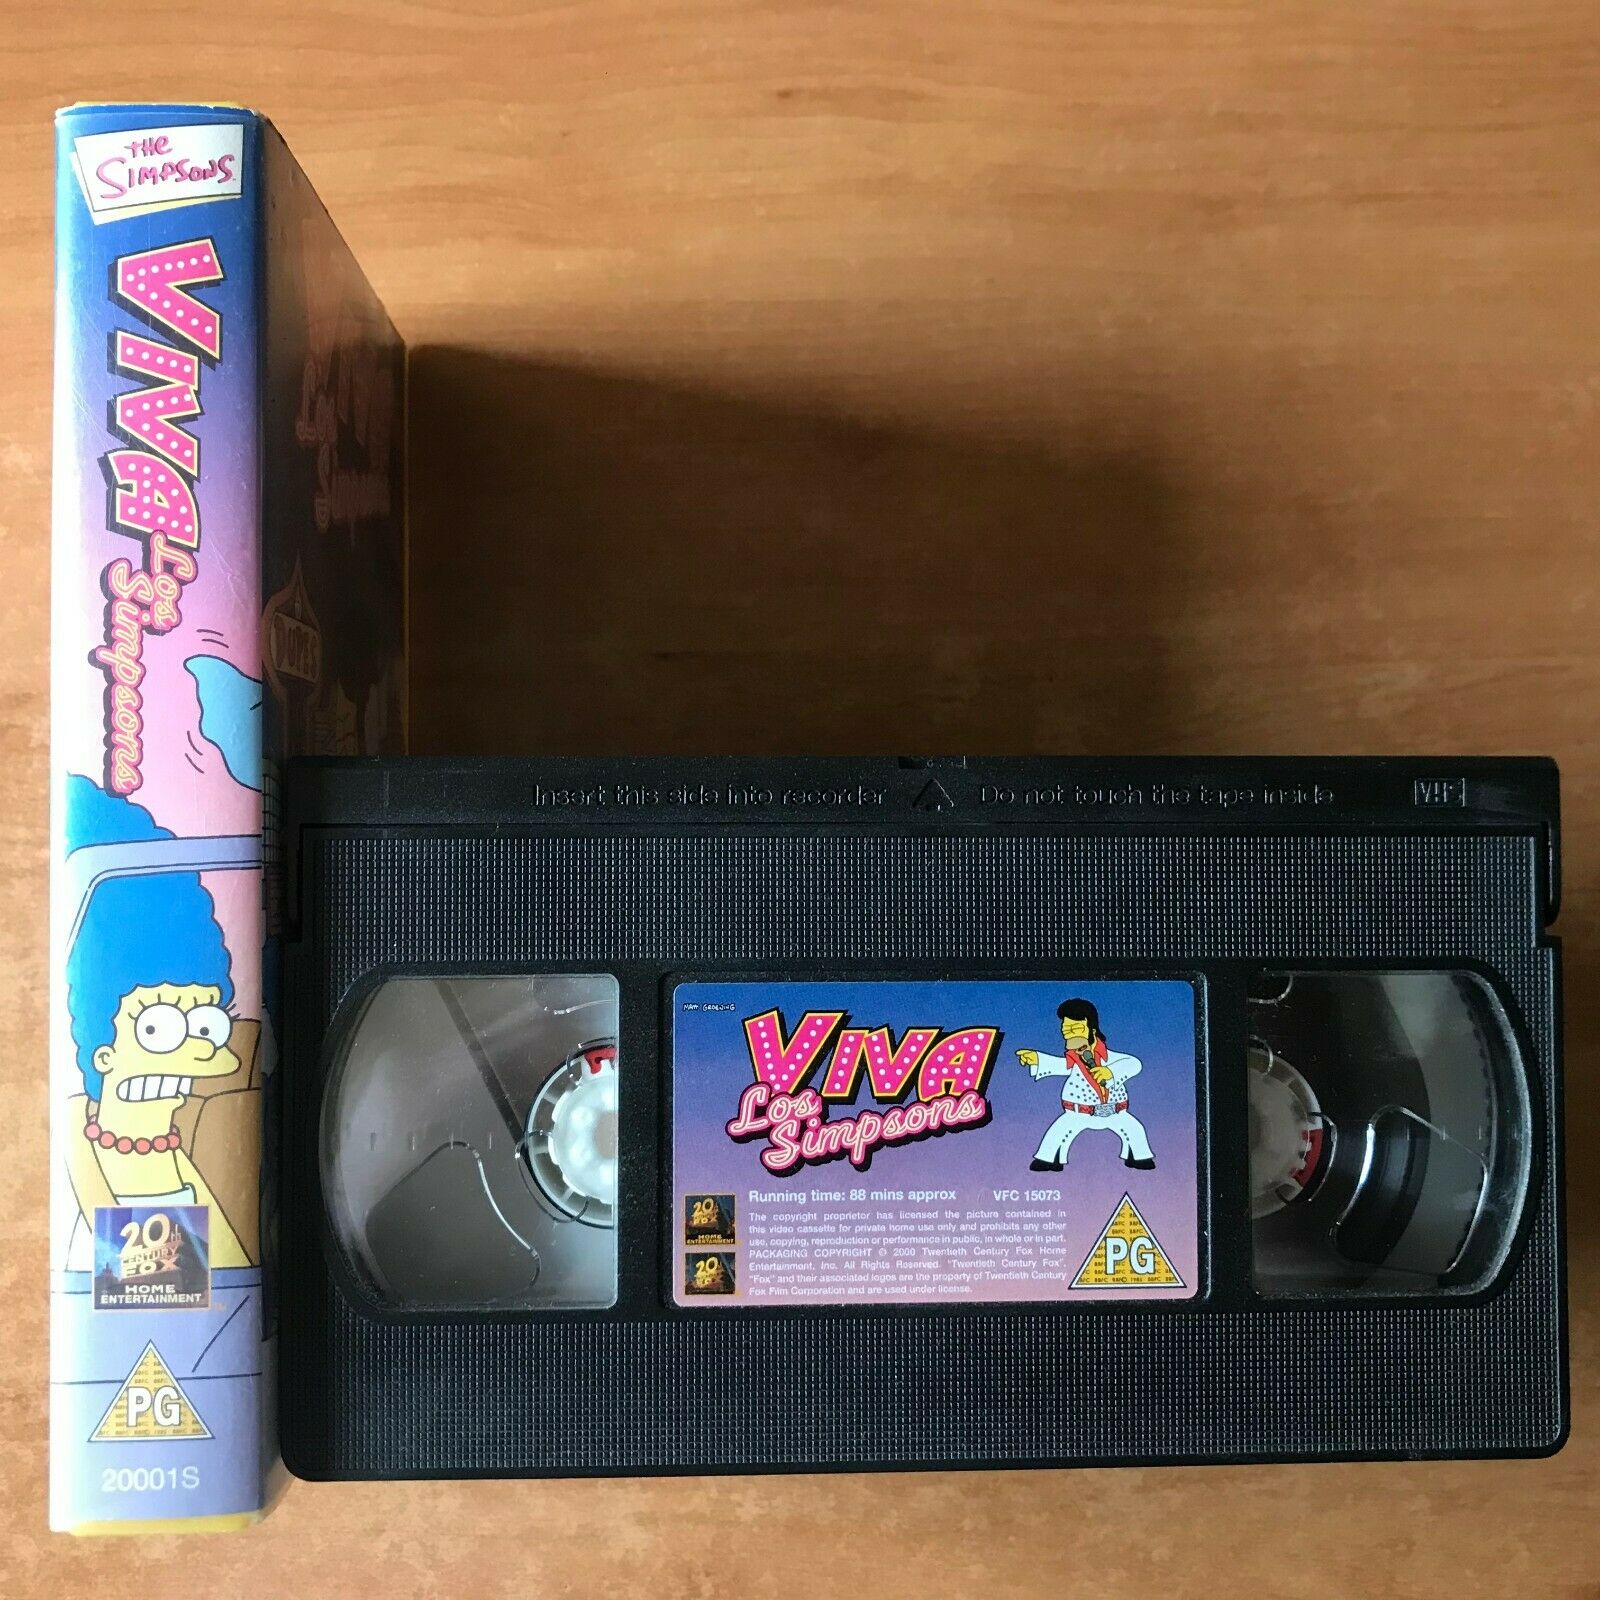 Viva Los Simpsons: "Springfield" - Animated Comedy [Matt Groering] Kids - VHS-